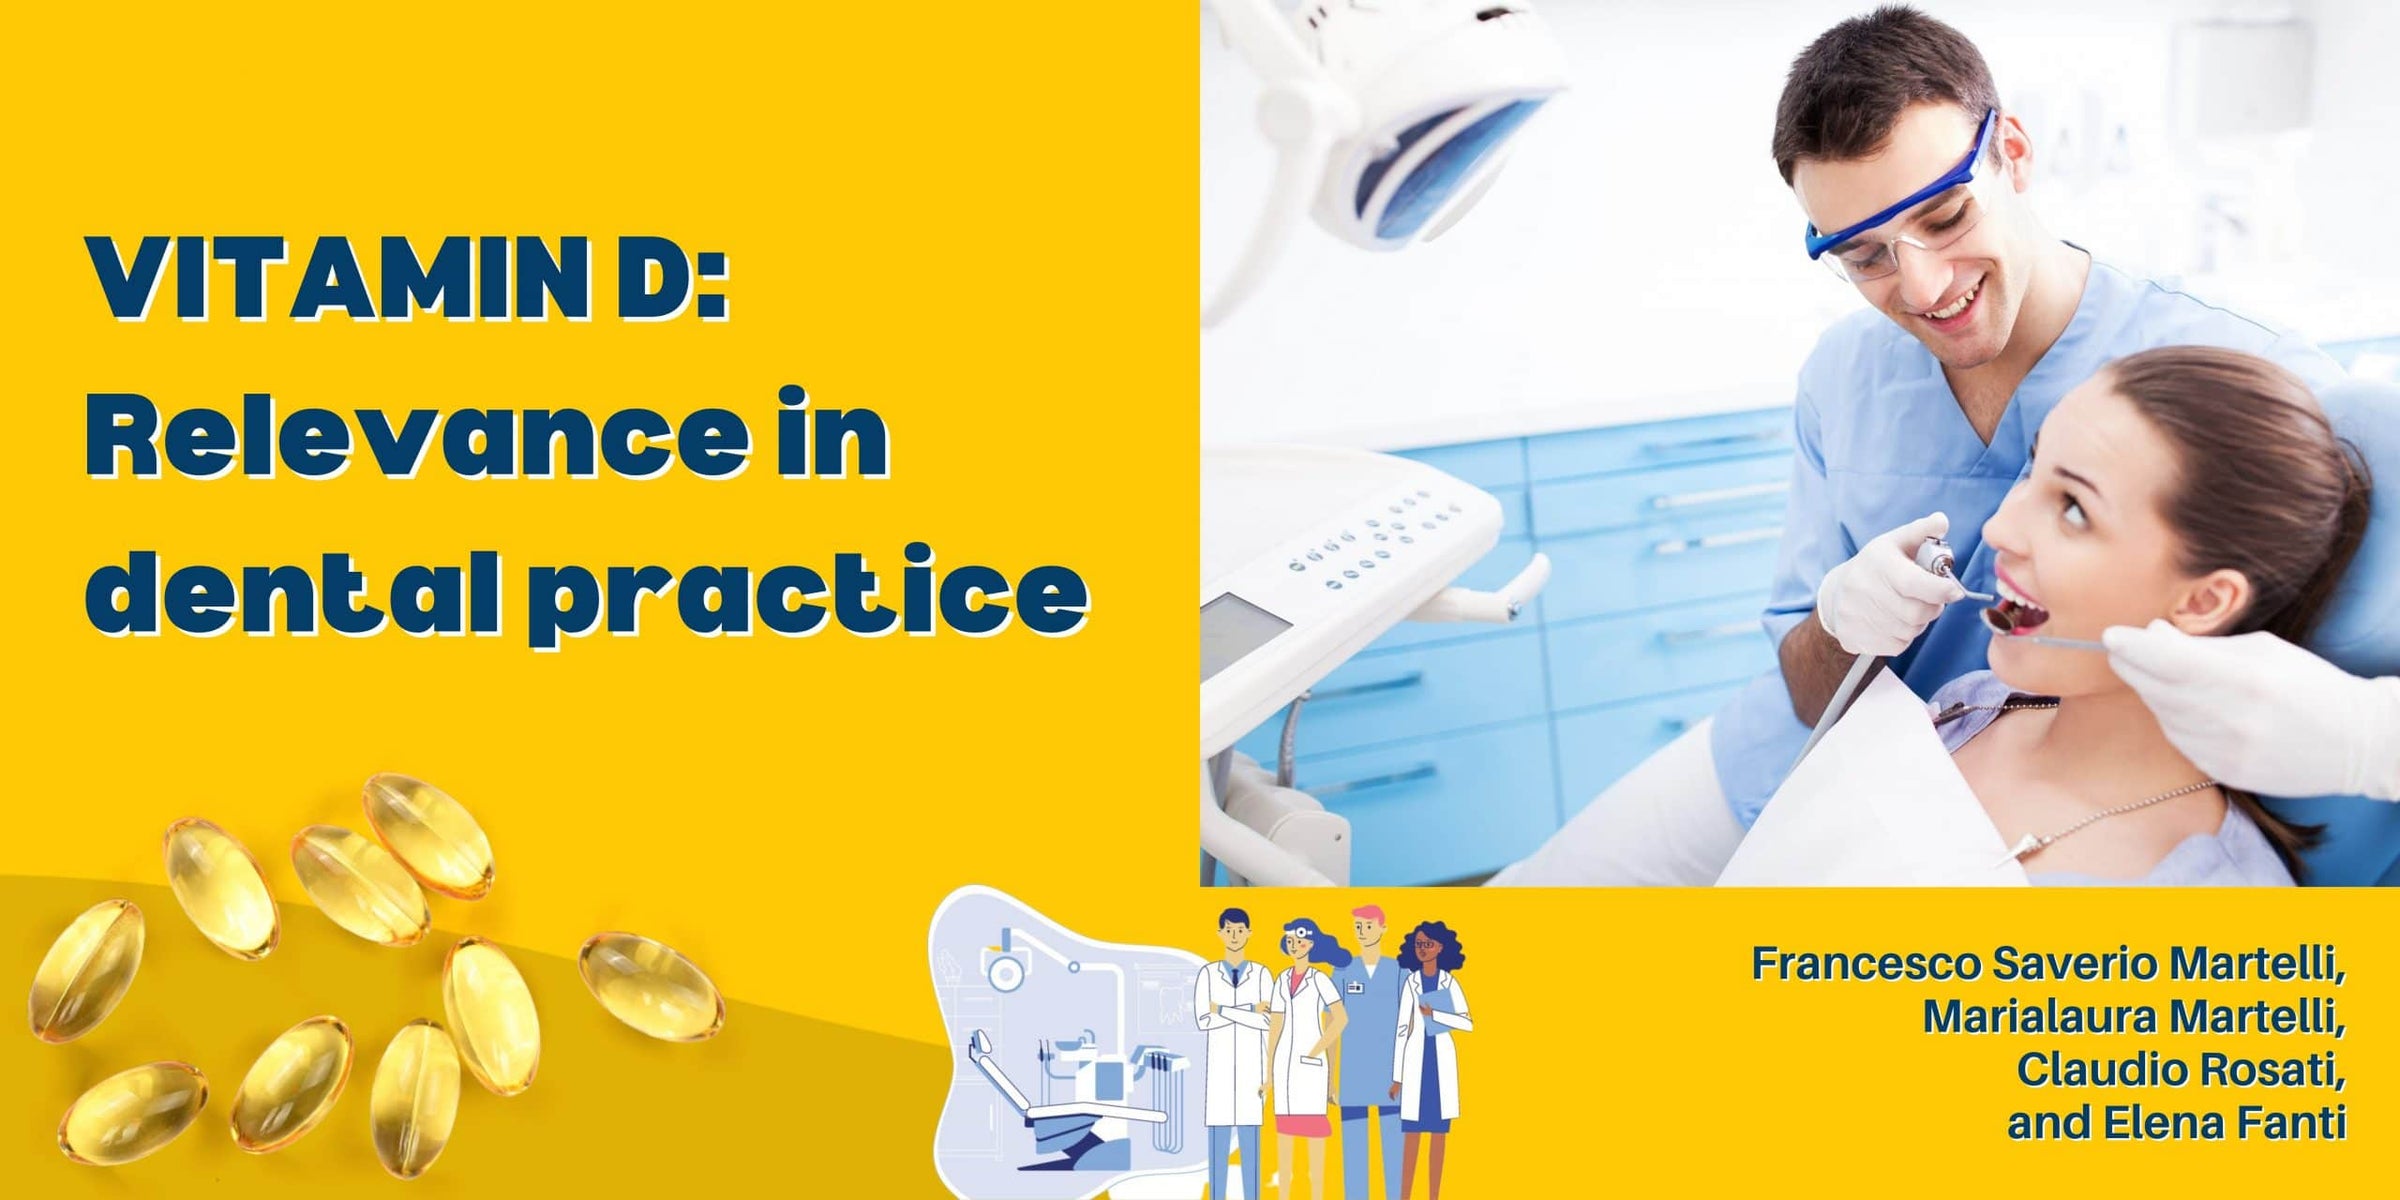 Vitamin D: Relevance in Dental Practice Image